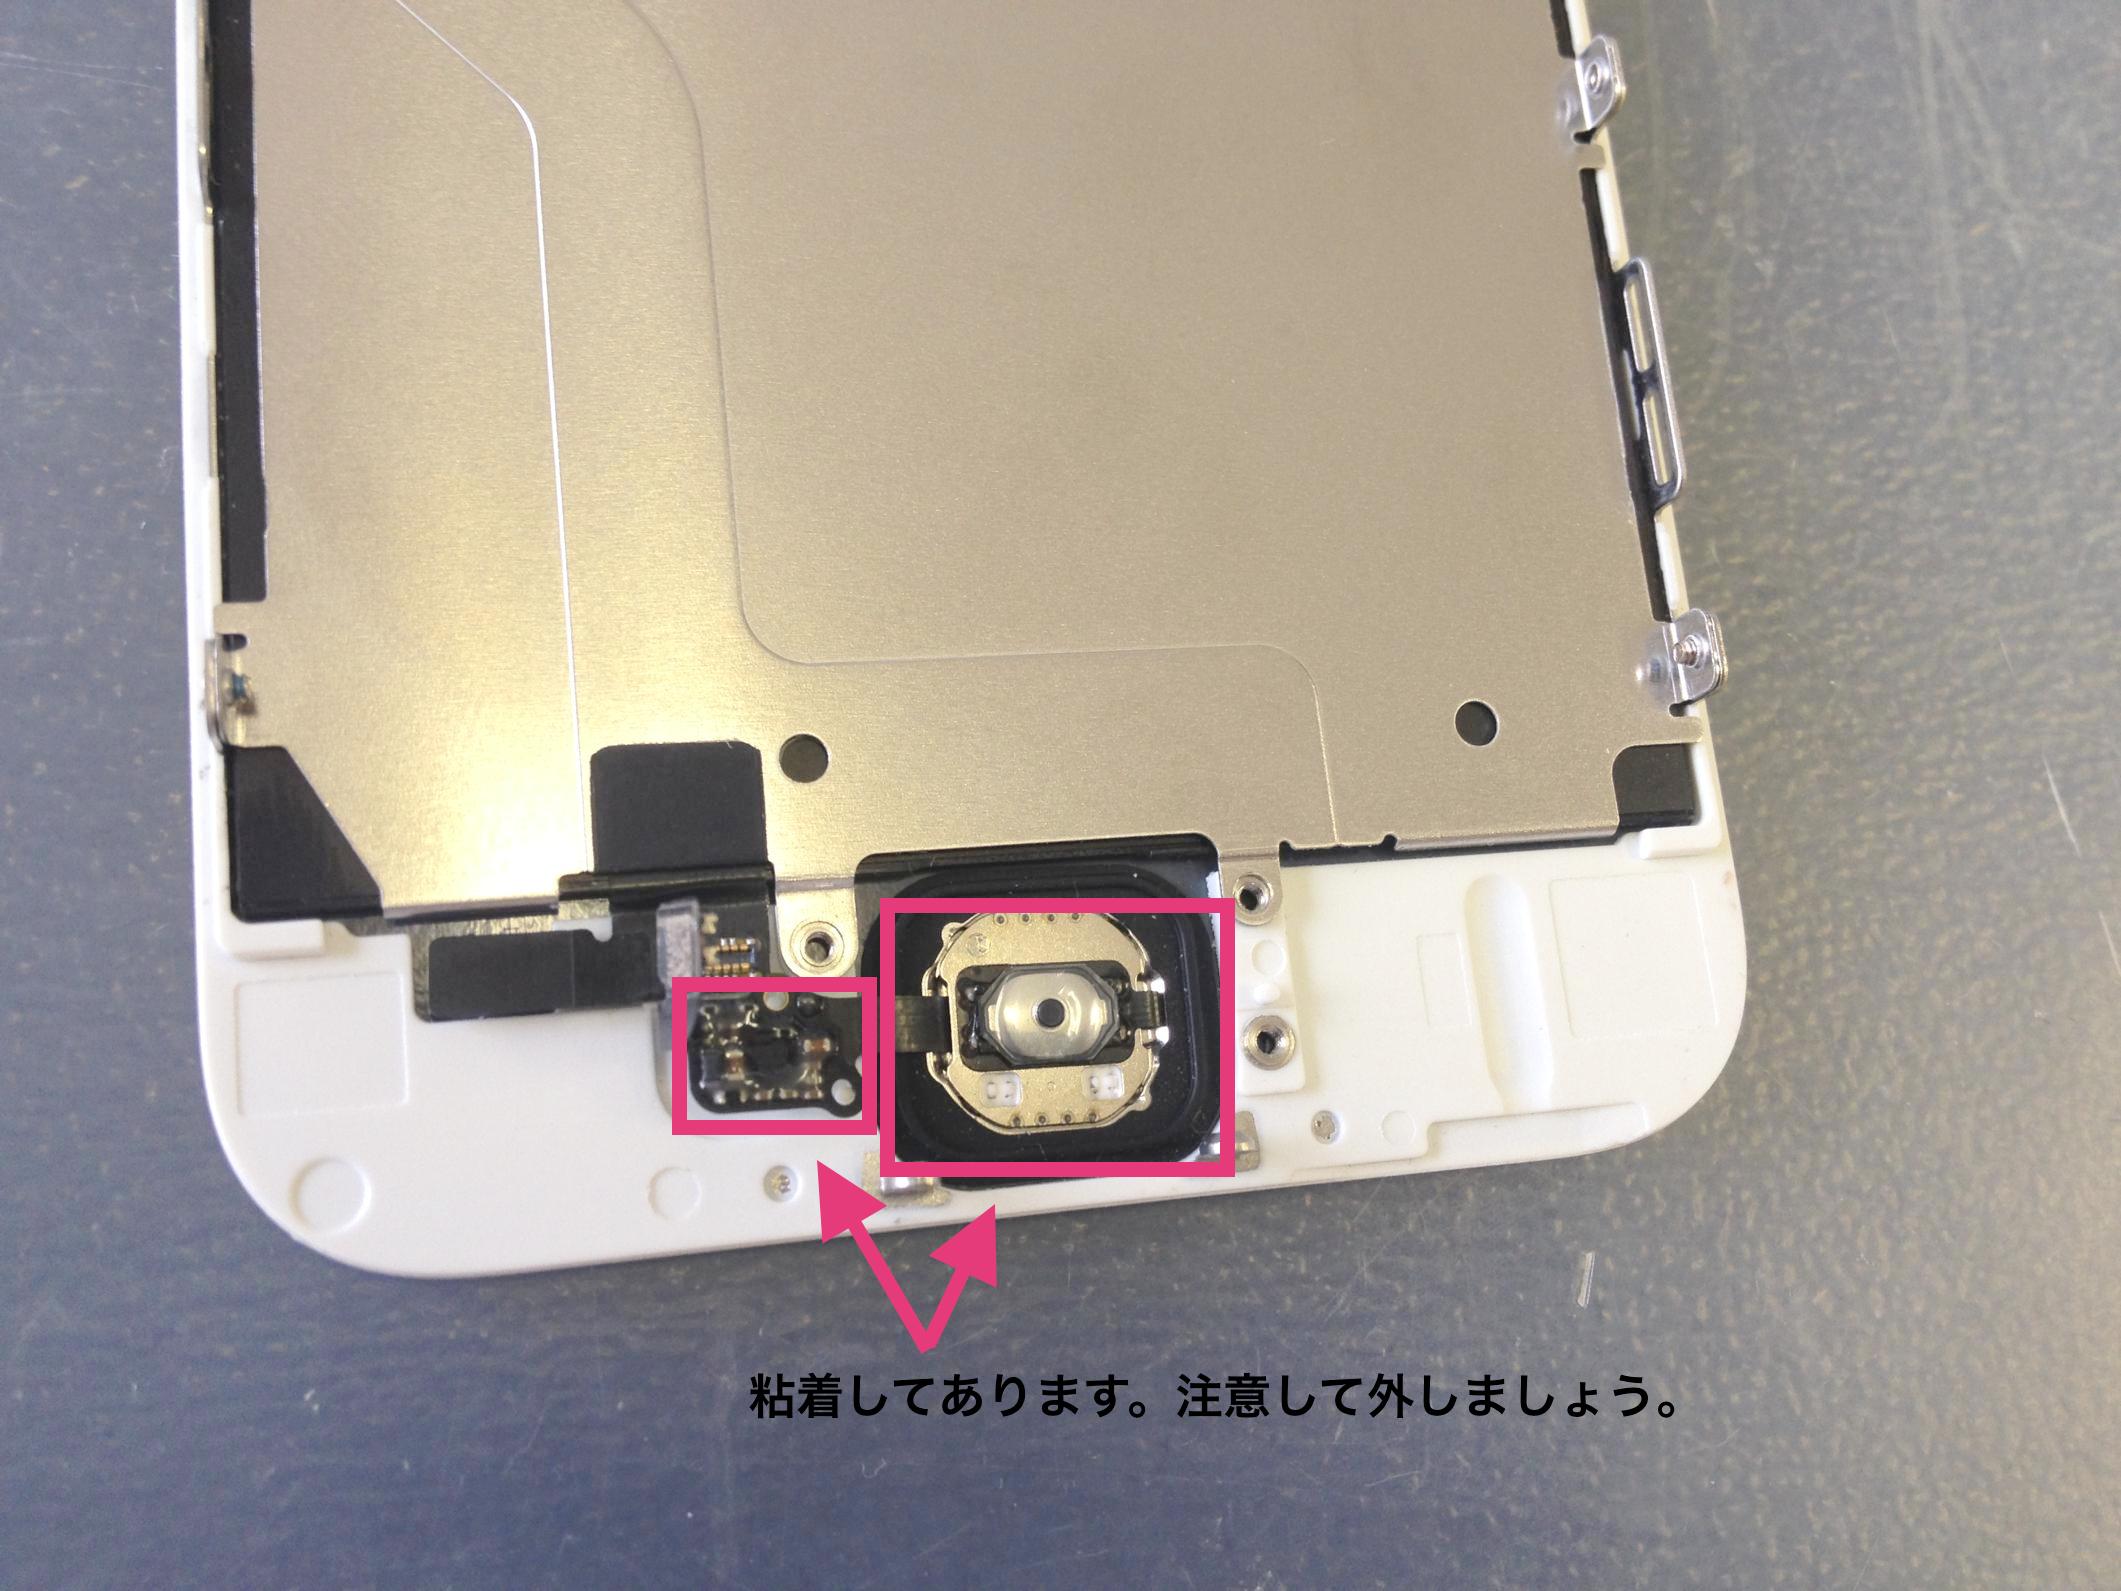 Iphone6ホームボタン修理方法 Iphone修理方法